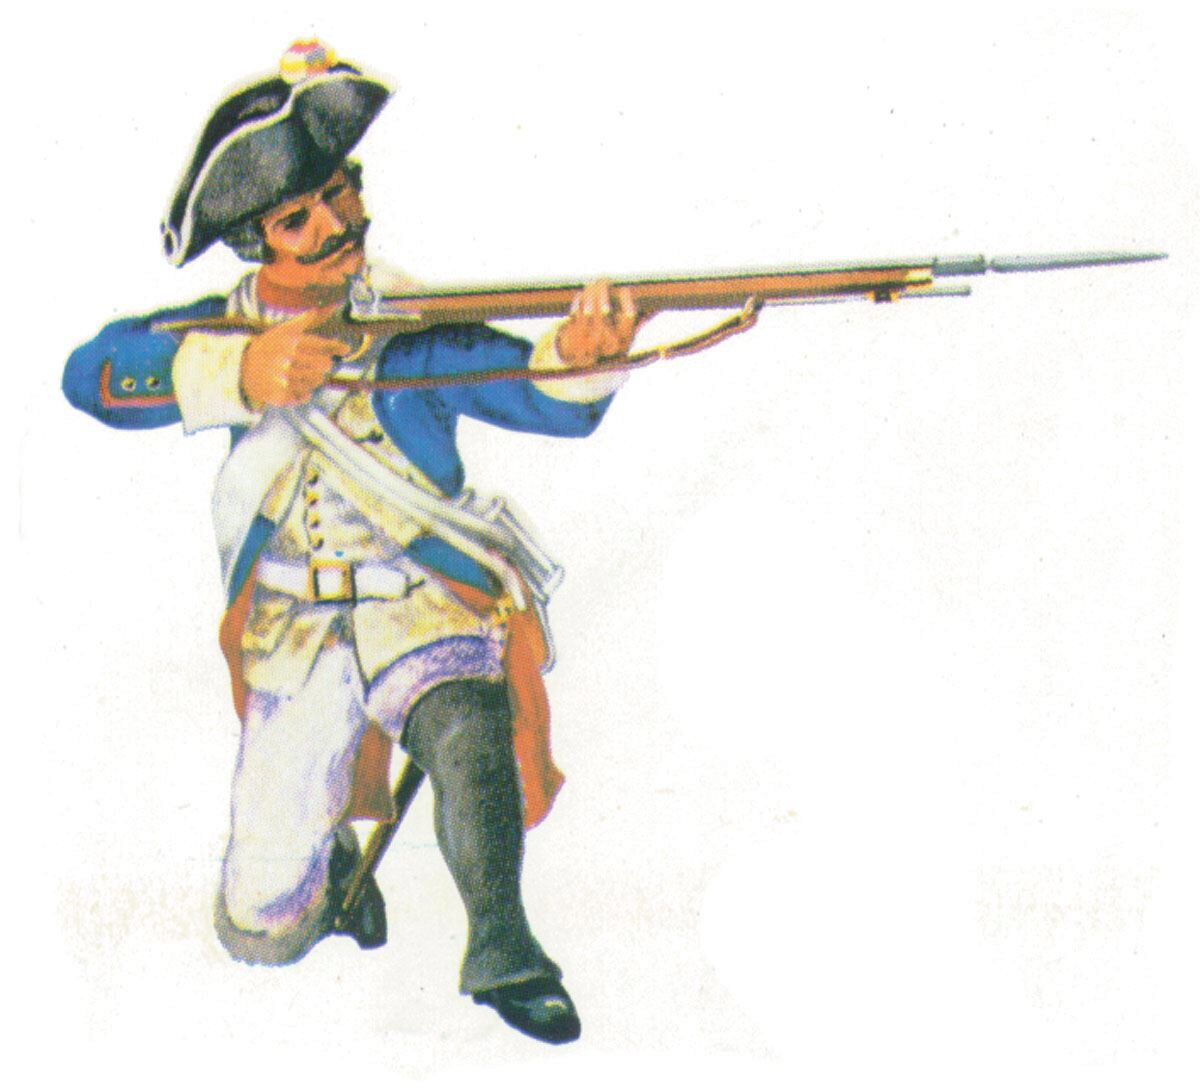 Prince August 405 Zinngiessform Prussian Musketier. Kniend schießend Preußen 18. Jh.